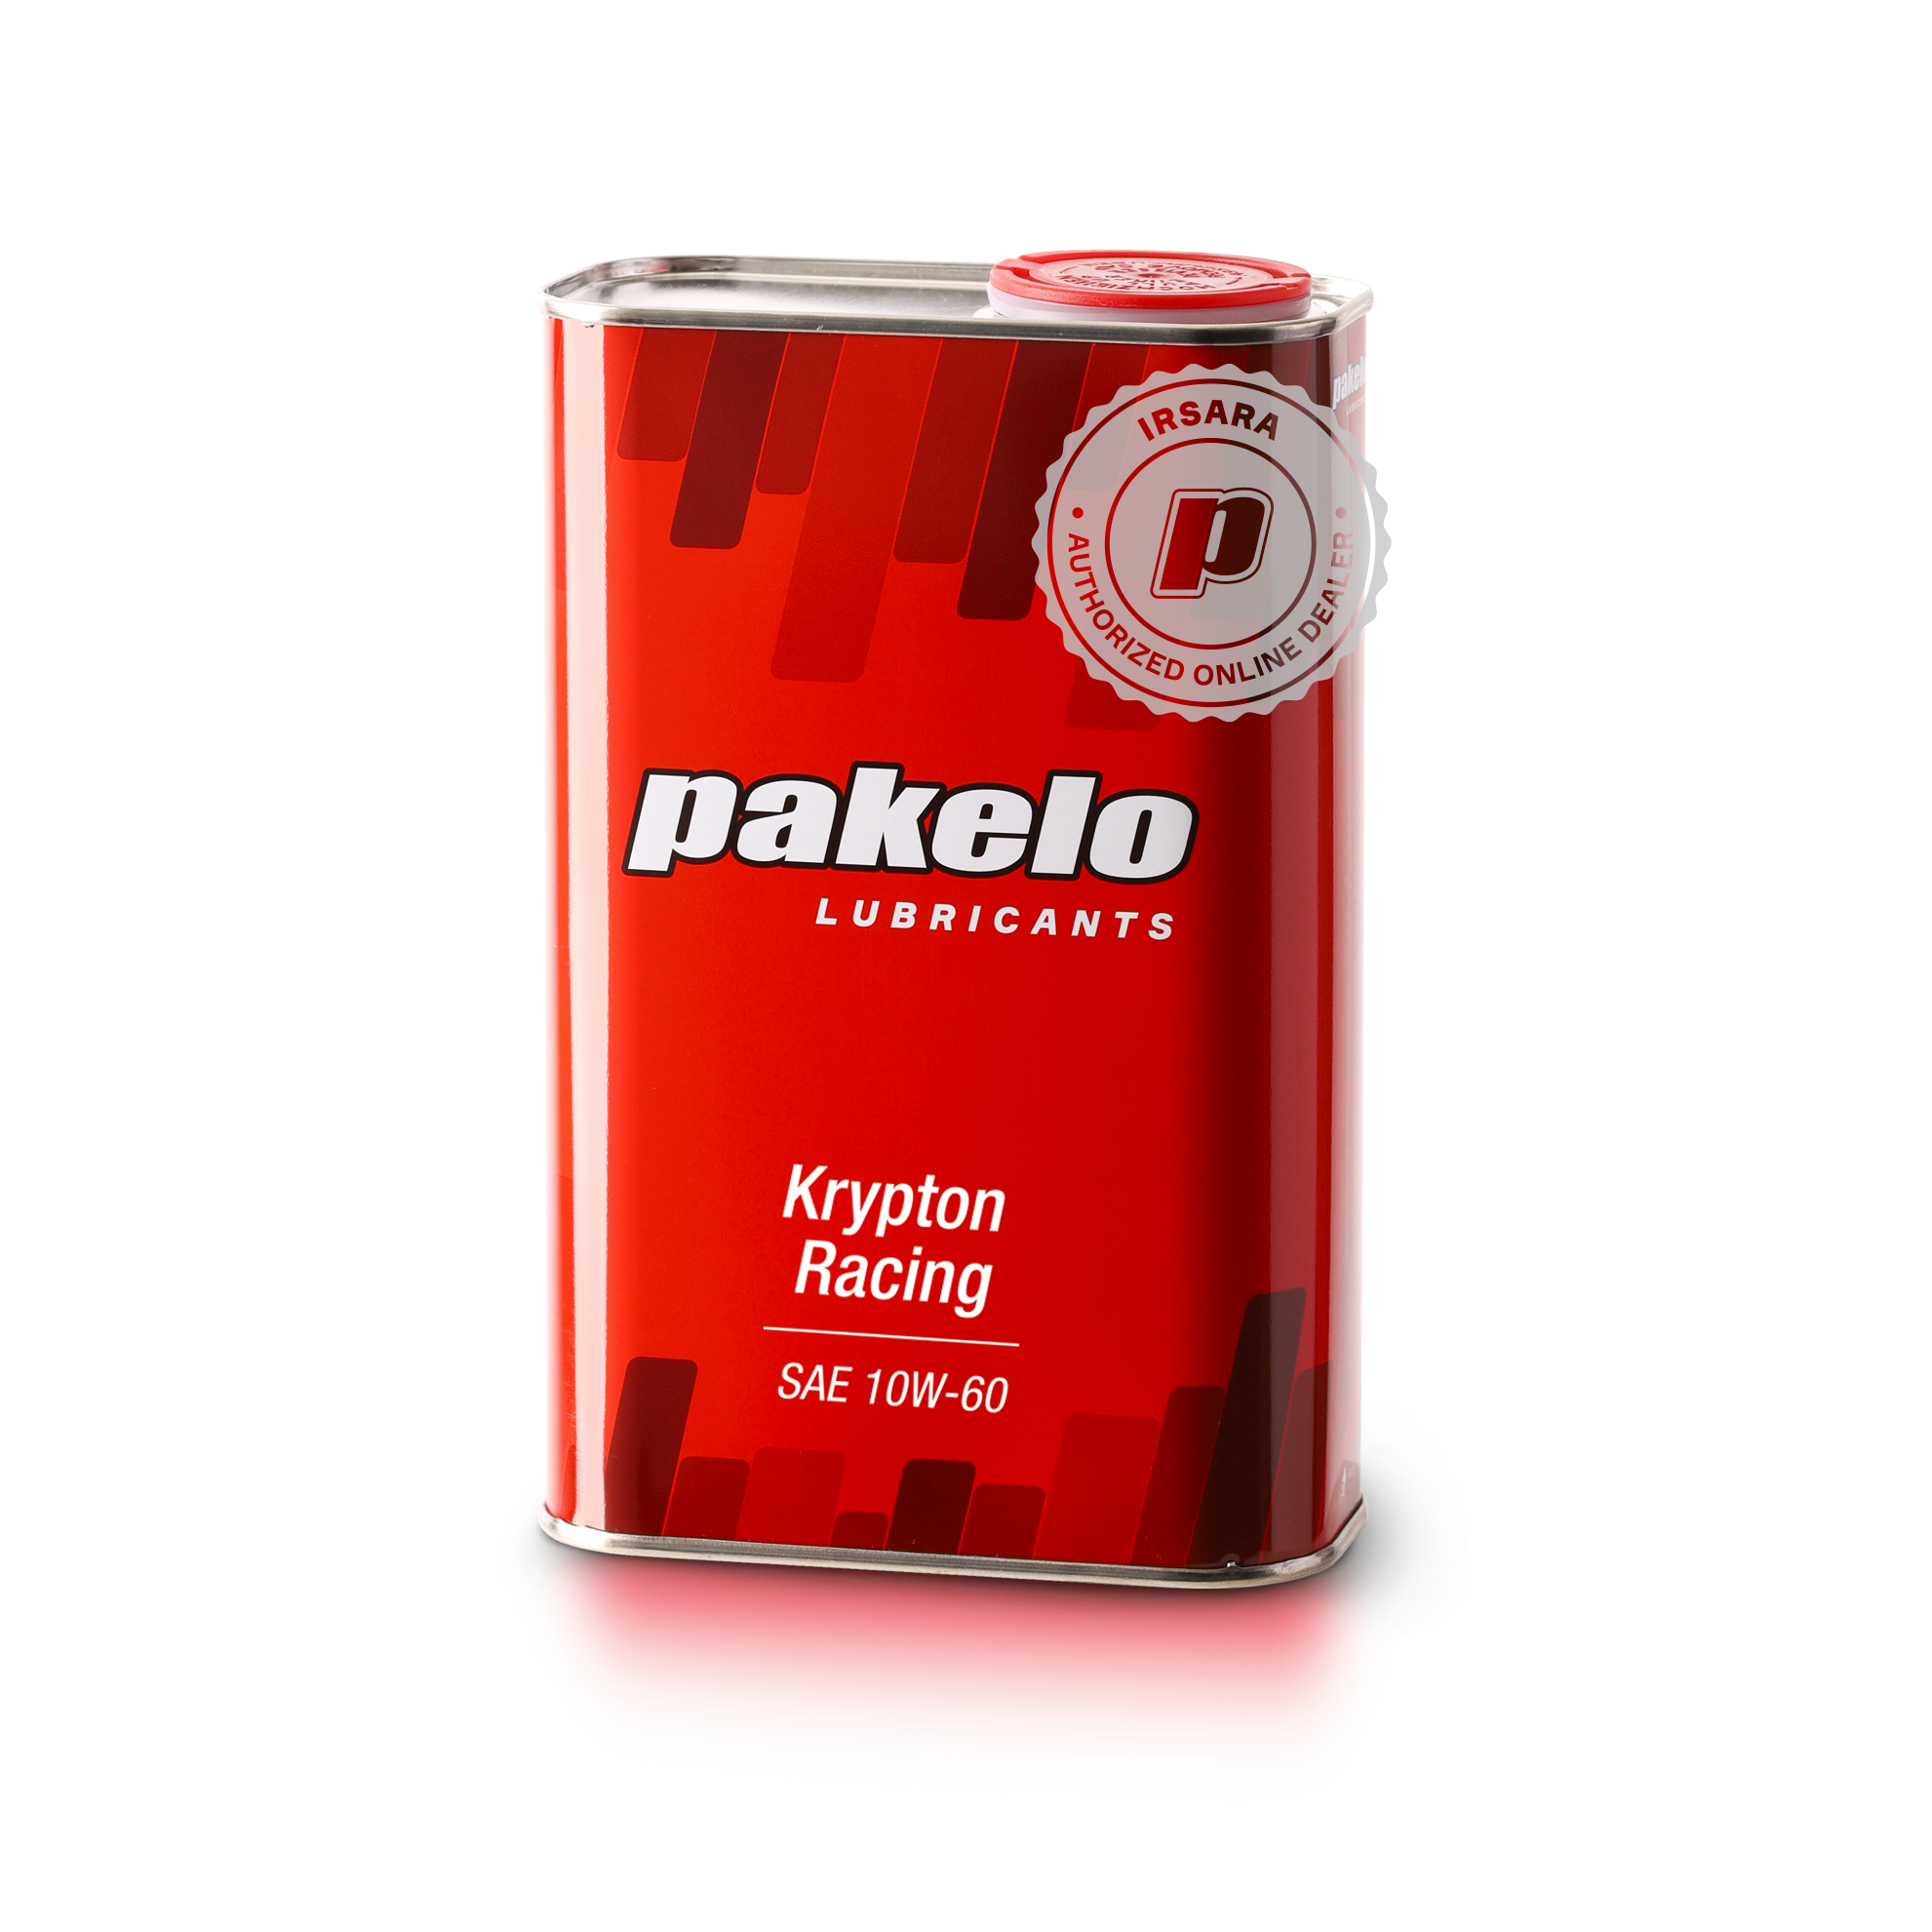 Pakelo Krypton Racing SAE 10W/60 (1 Lt)